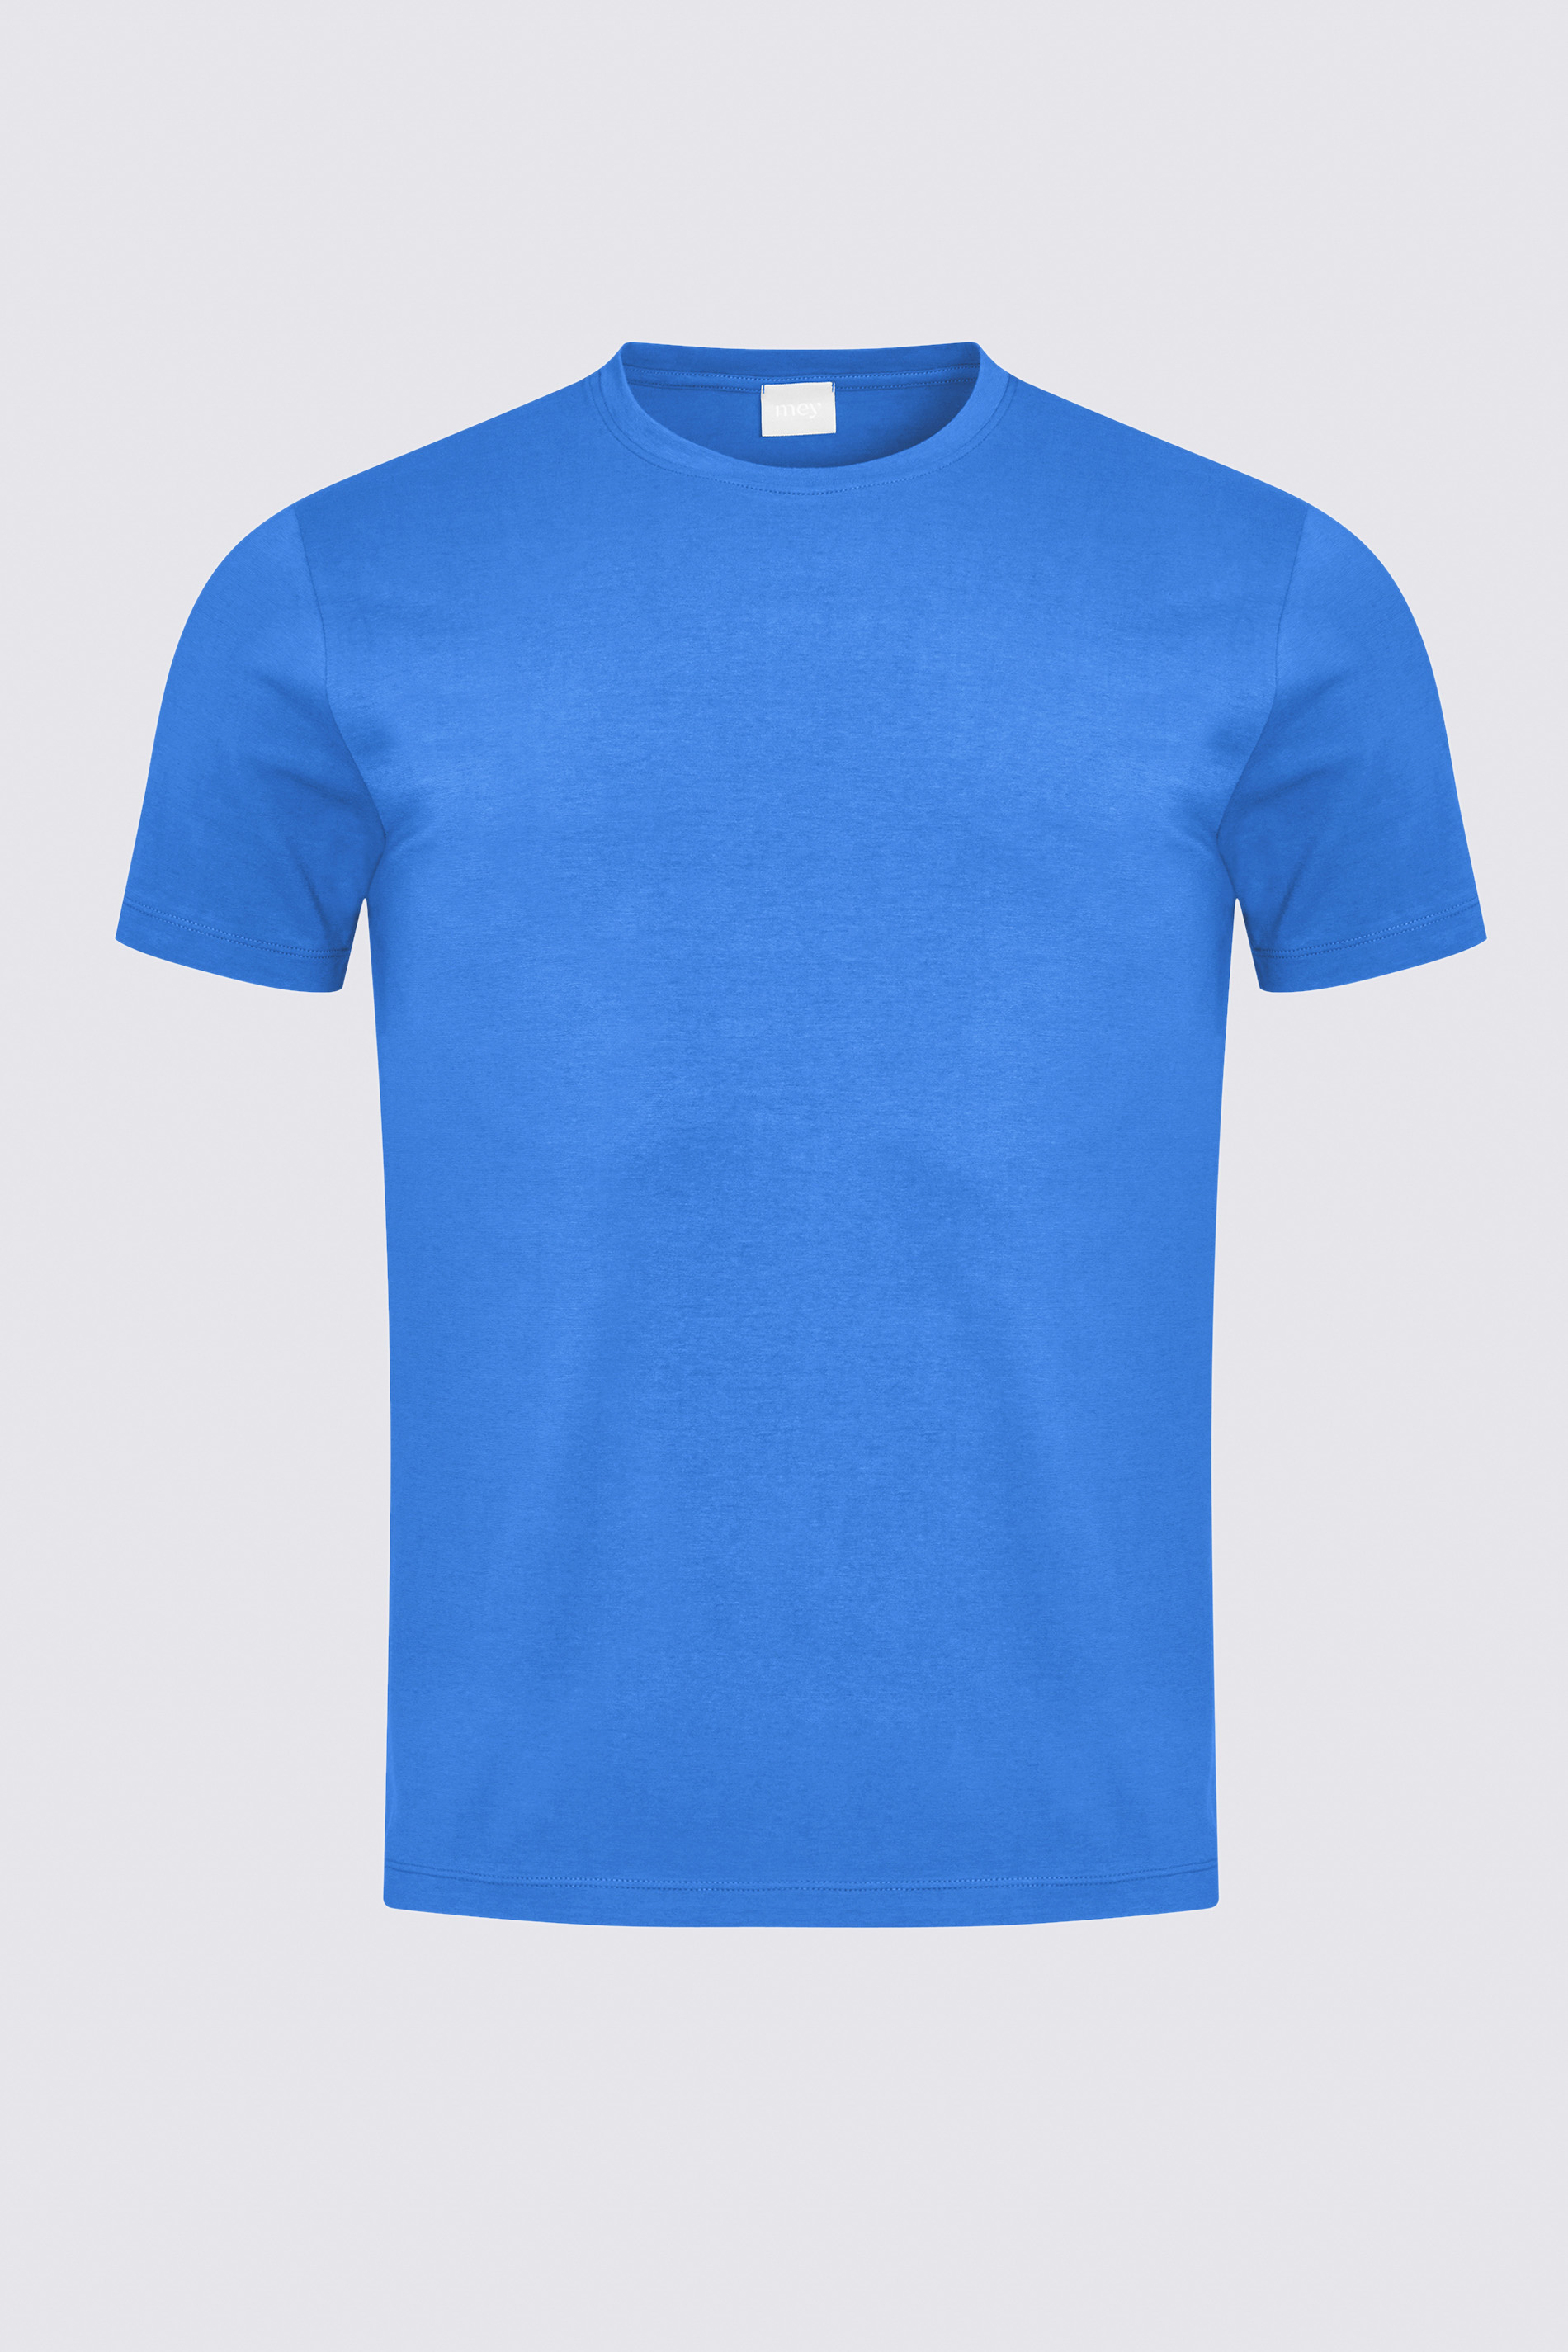 T-Shirt Porcelain Blue Serie Relax Freisteller | mey®